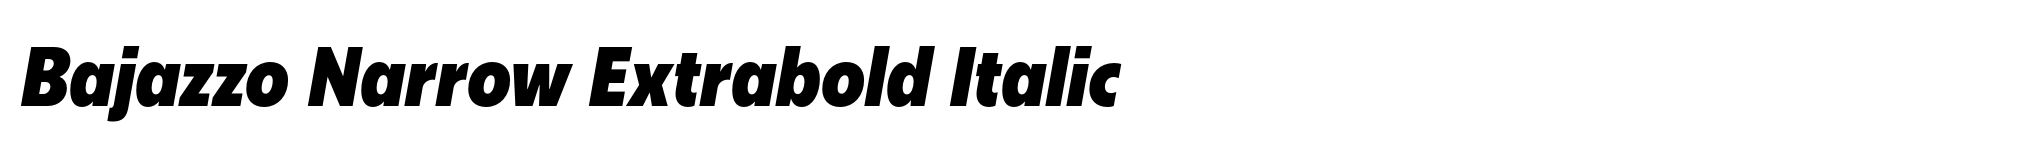 Bajazzo Narrow Extrabold Italic image